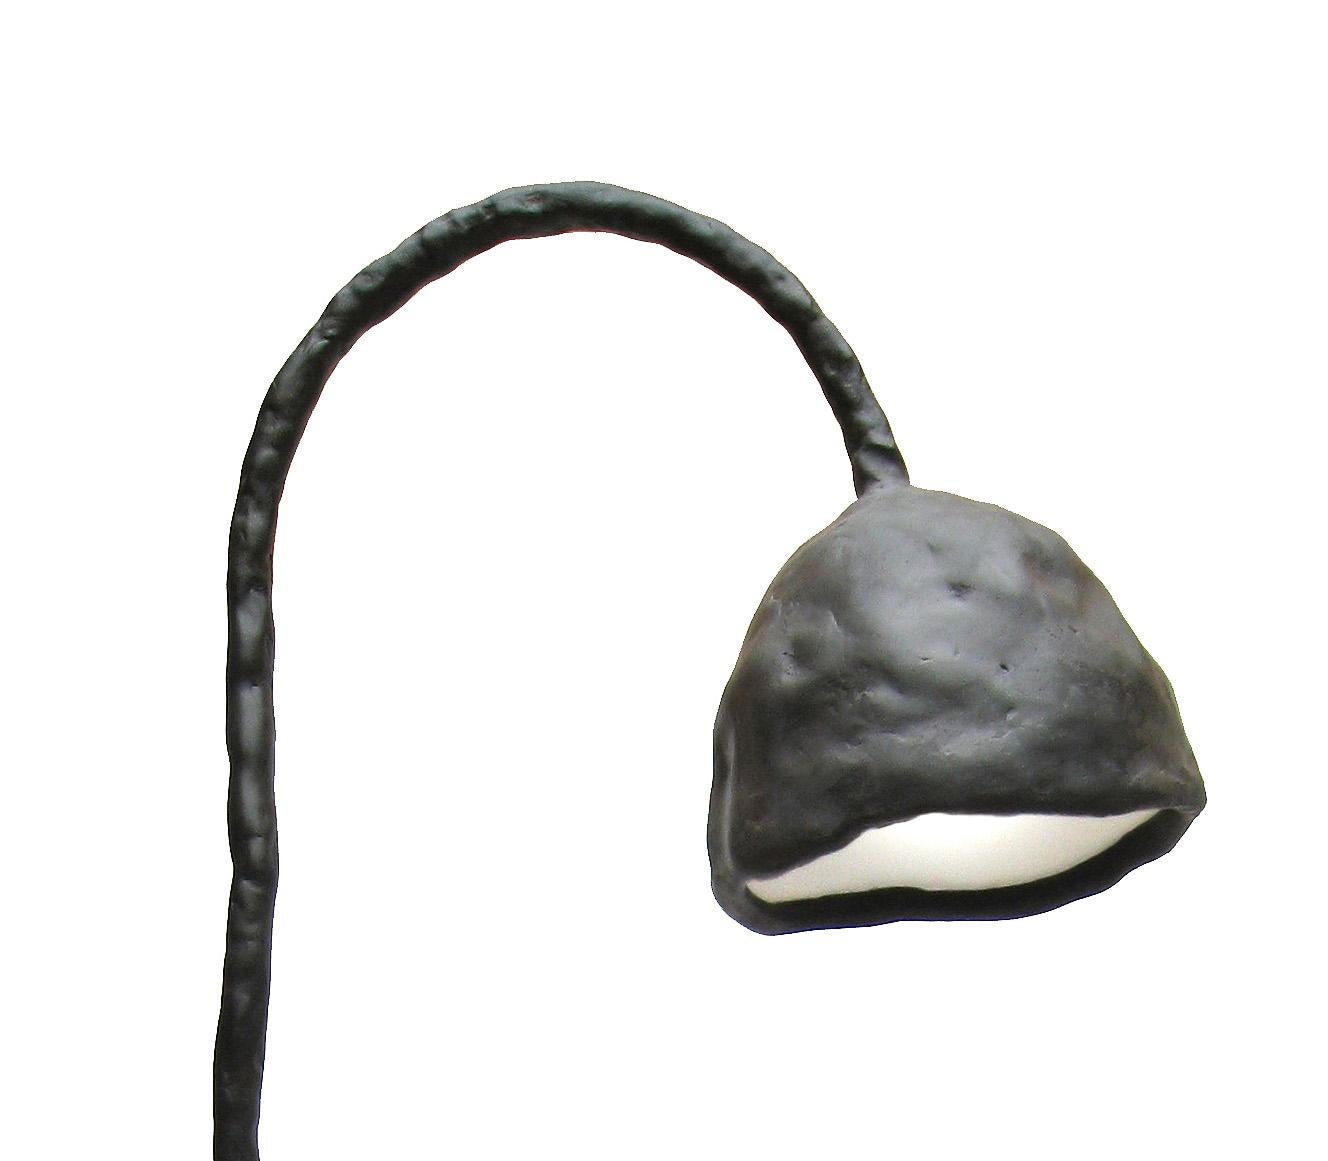 Ce lampadaire est issu de la collection Plain Clay de Maarten Baas. Cette collection a été développée à l'origine pour le restaurant Mendini du Musée Groninger.

Contrairement aux séries en argile, les pièces en argile unie ne nécessitent pas de